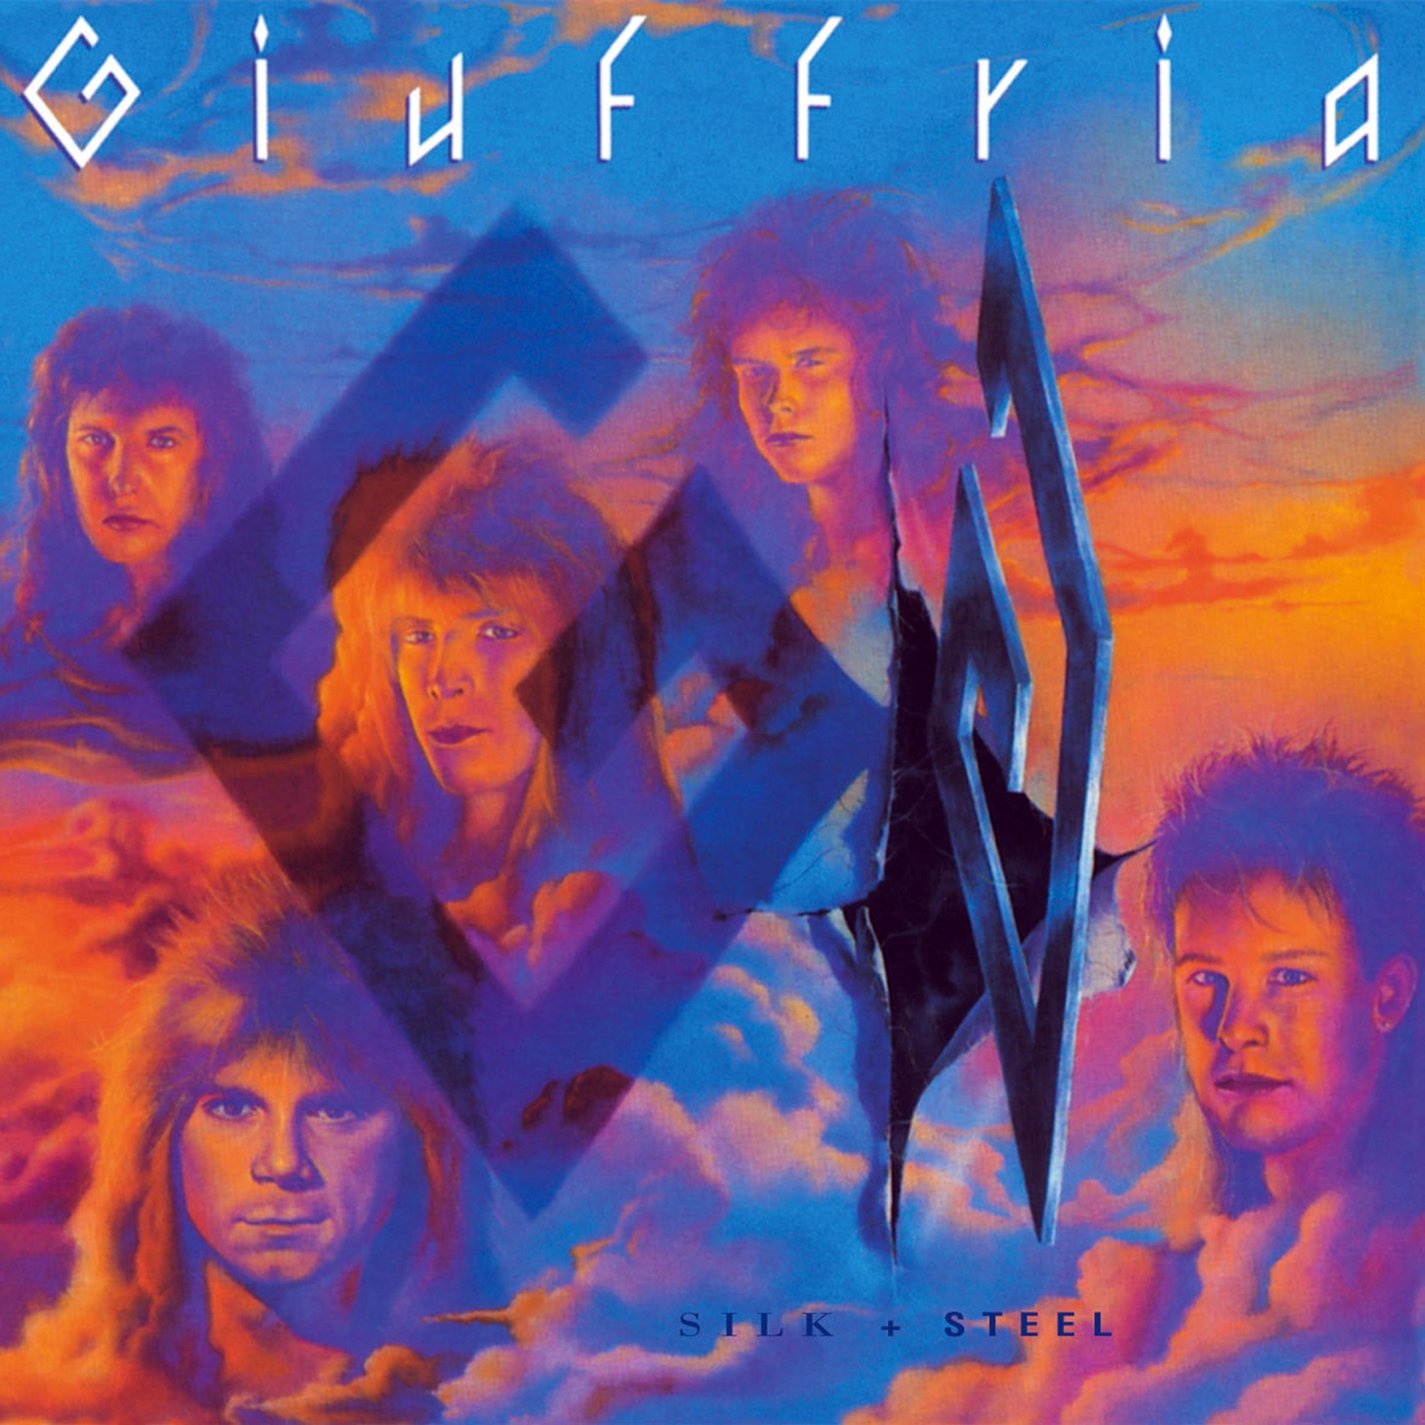 GIUFFRIA - Silk & Steel cover 